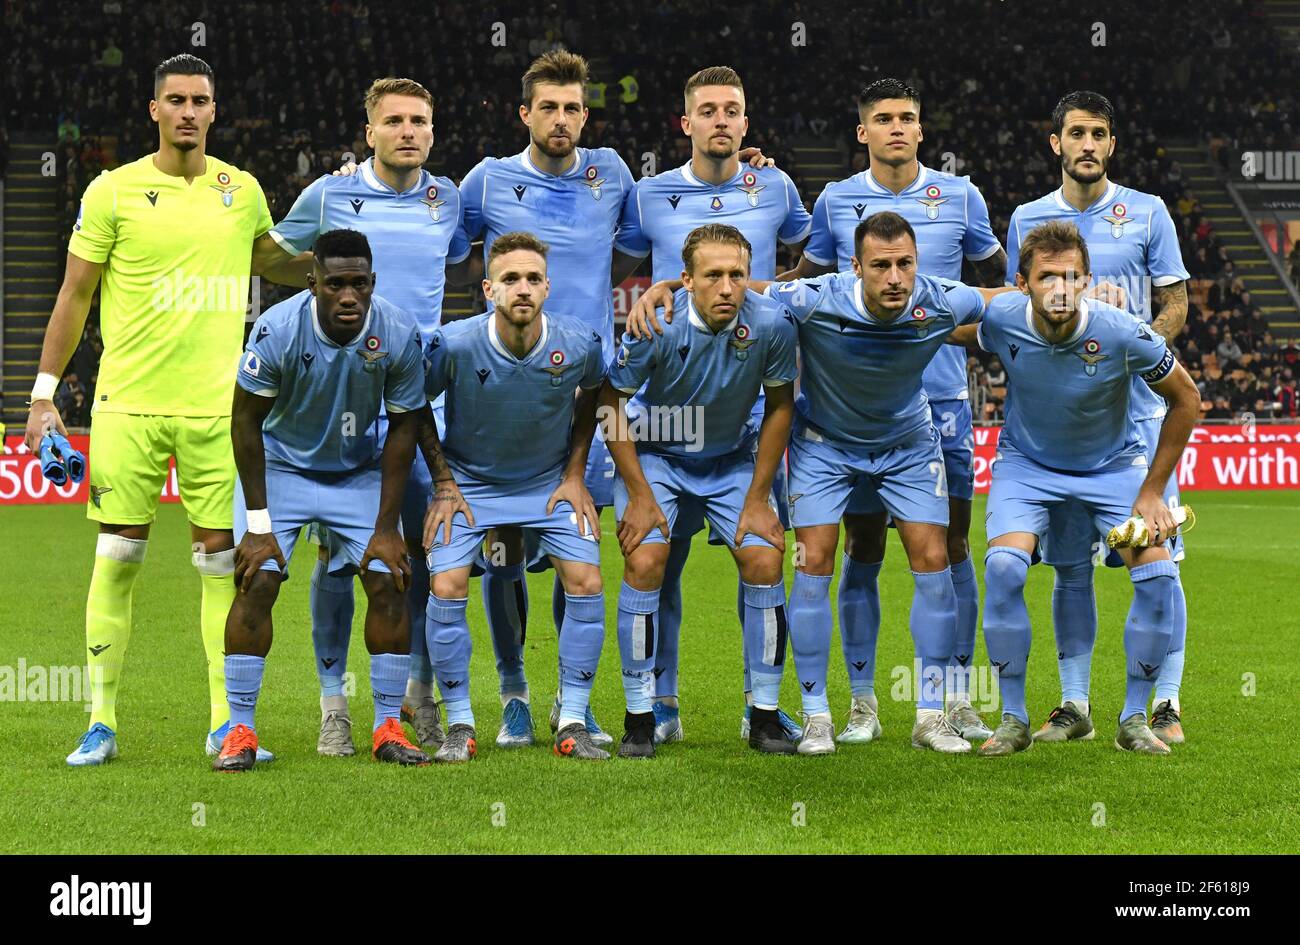 Foto del equipo de fútbol de SS Lazio en el estadio de San Siro, en Milán, Italia. Foto de stock